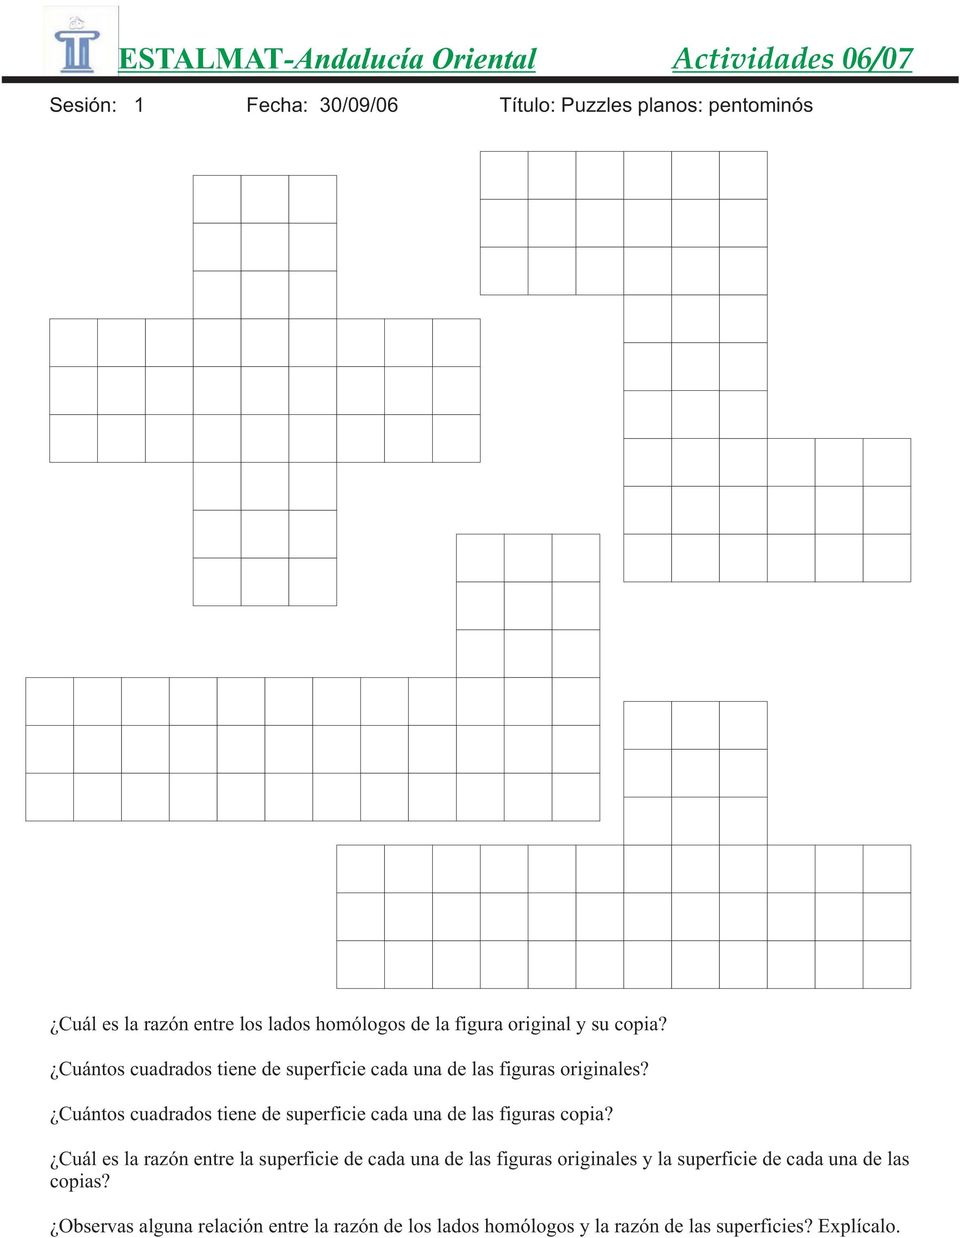 Cuántos cuadrados tiene de superficie cada una de las figuras copia?